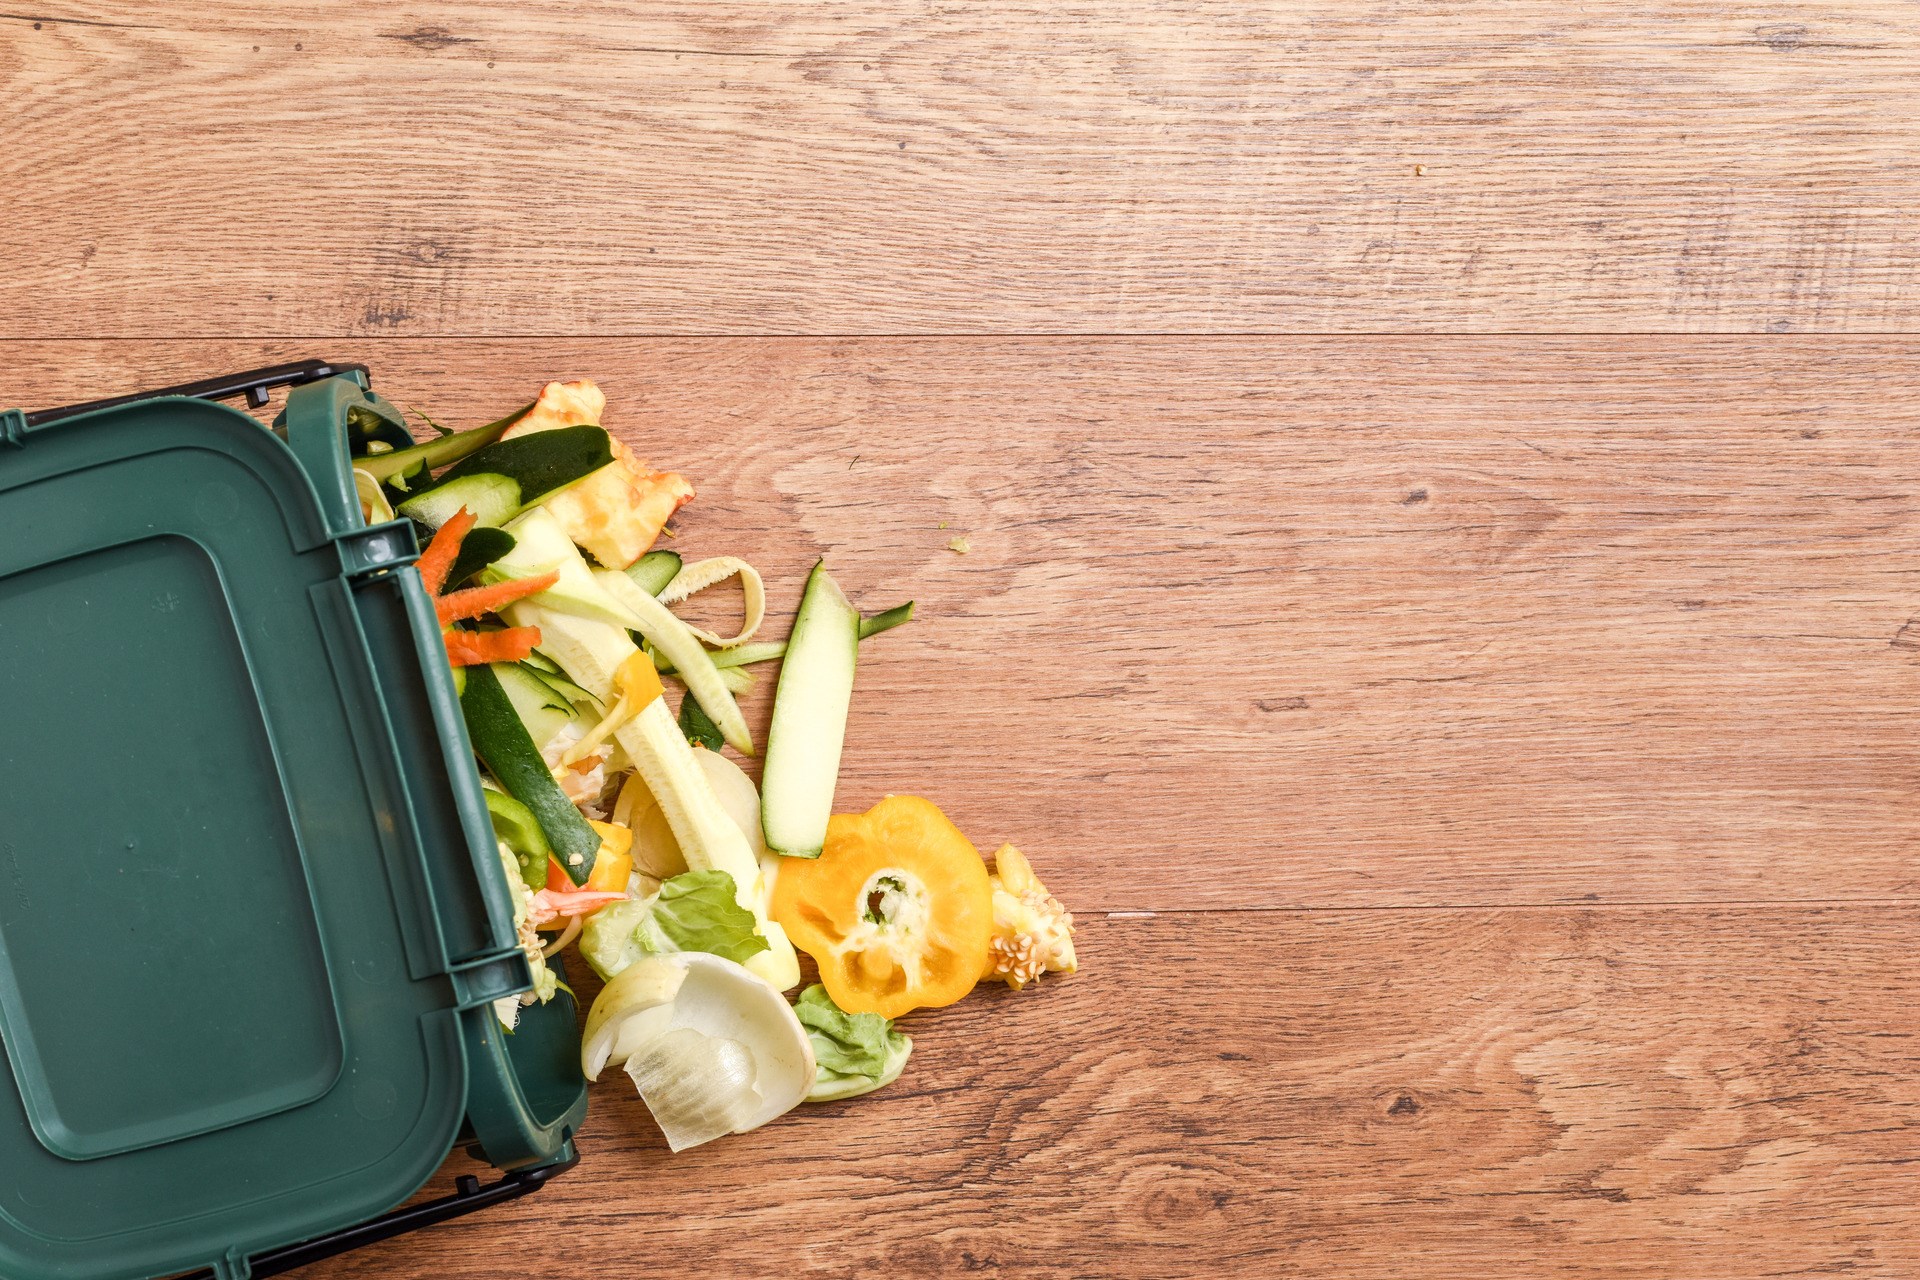 Lebensmittelabfälle aus der häuslichen Küche Verantwortungsbewusste Entsorgung von Lebensmittelabfällen aus dem Haushalt auf umweltfreundliche Weise durch Recycling in der häuslichen Komposttonne